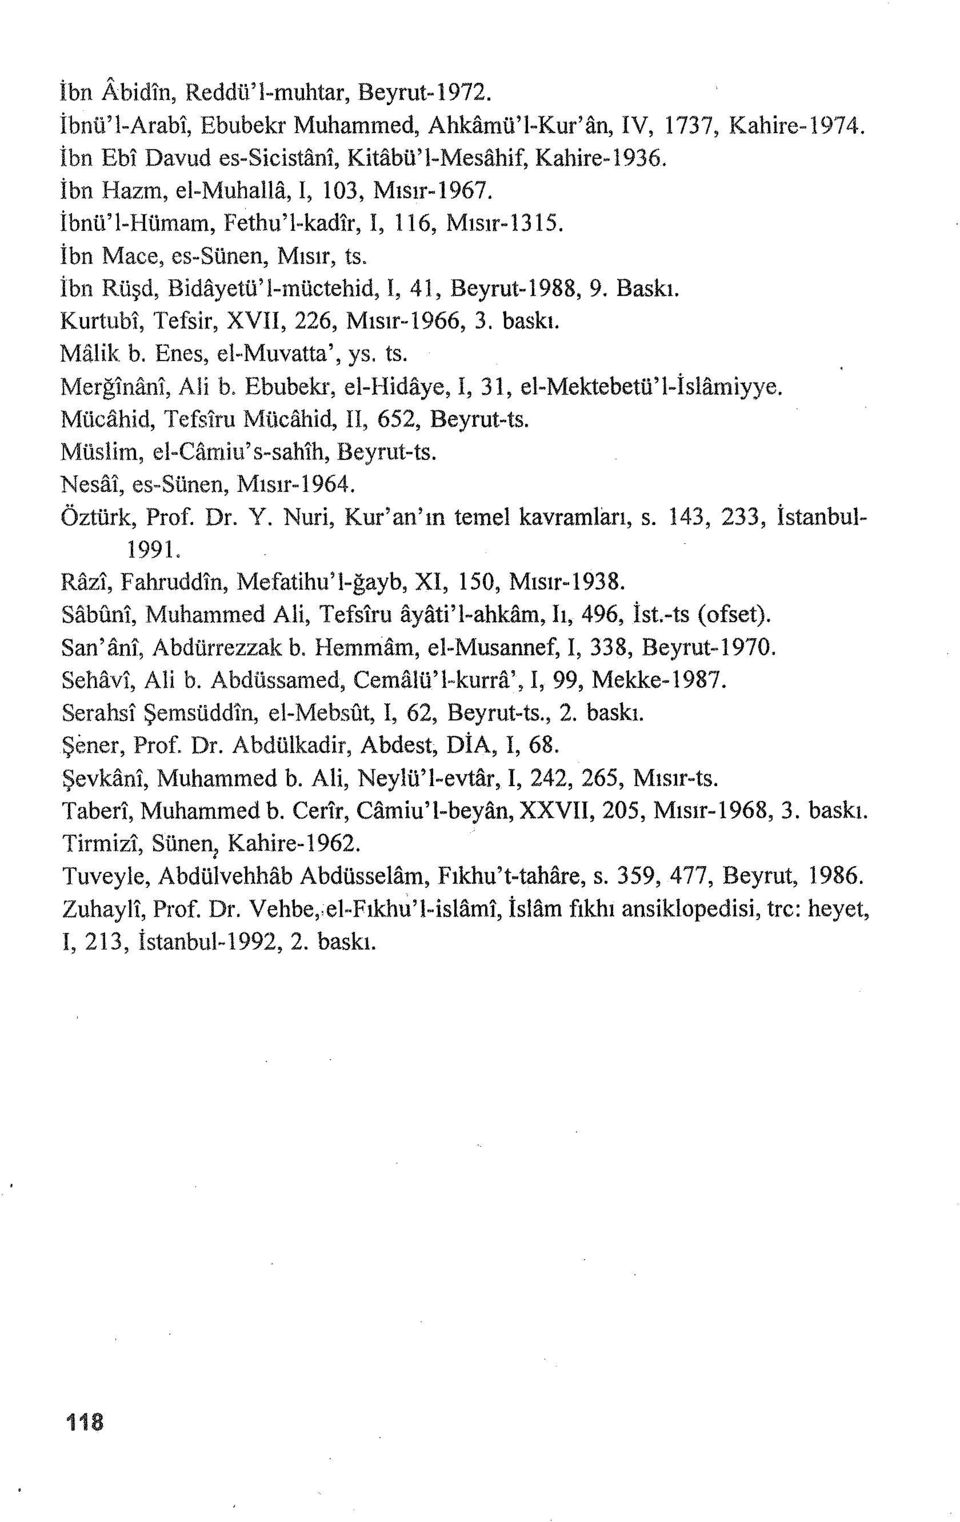 Kurtubi, Tefsir, XVII, 226, Mısır-1966, 3. baskı. Malik b. Enes, el-muvatta', ys. ts. Merğlnan!, Ali b. Ebubekr, el-hidiiye, I, 31, el-mektebetü'l-islamiyye.